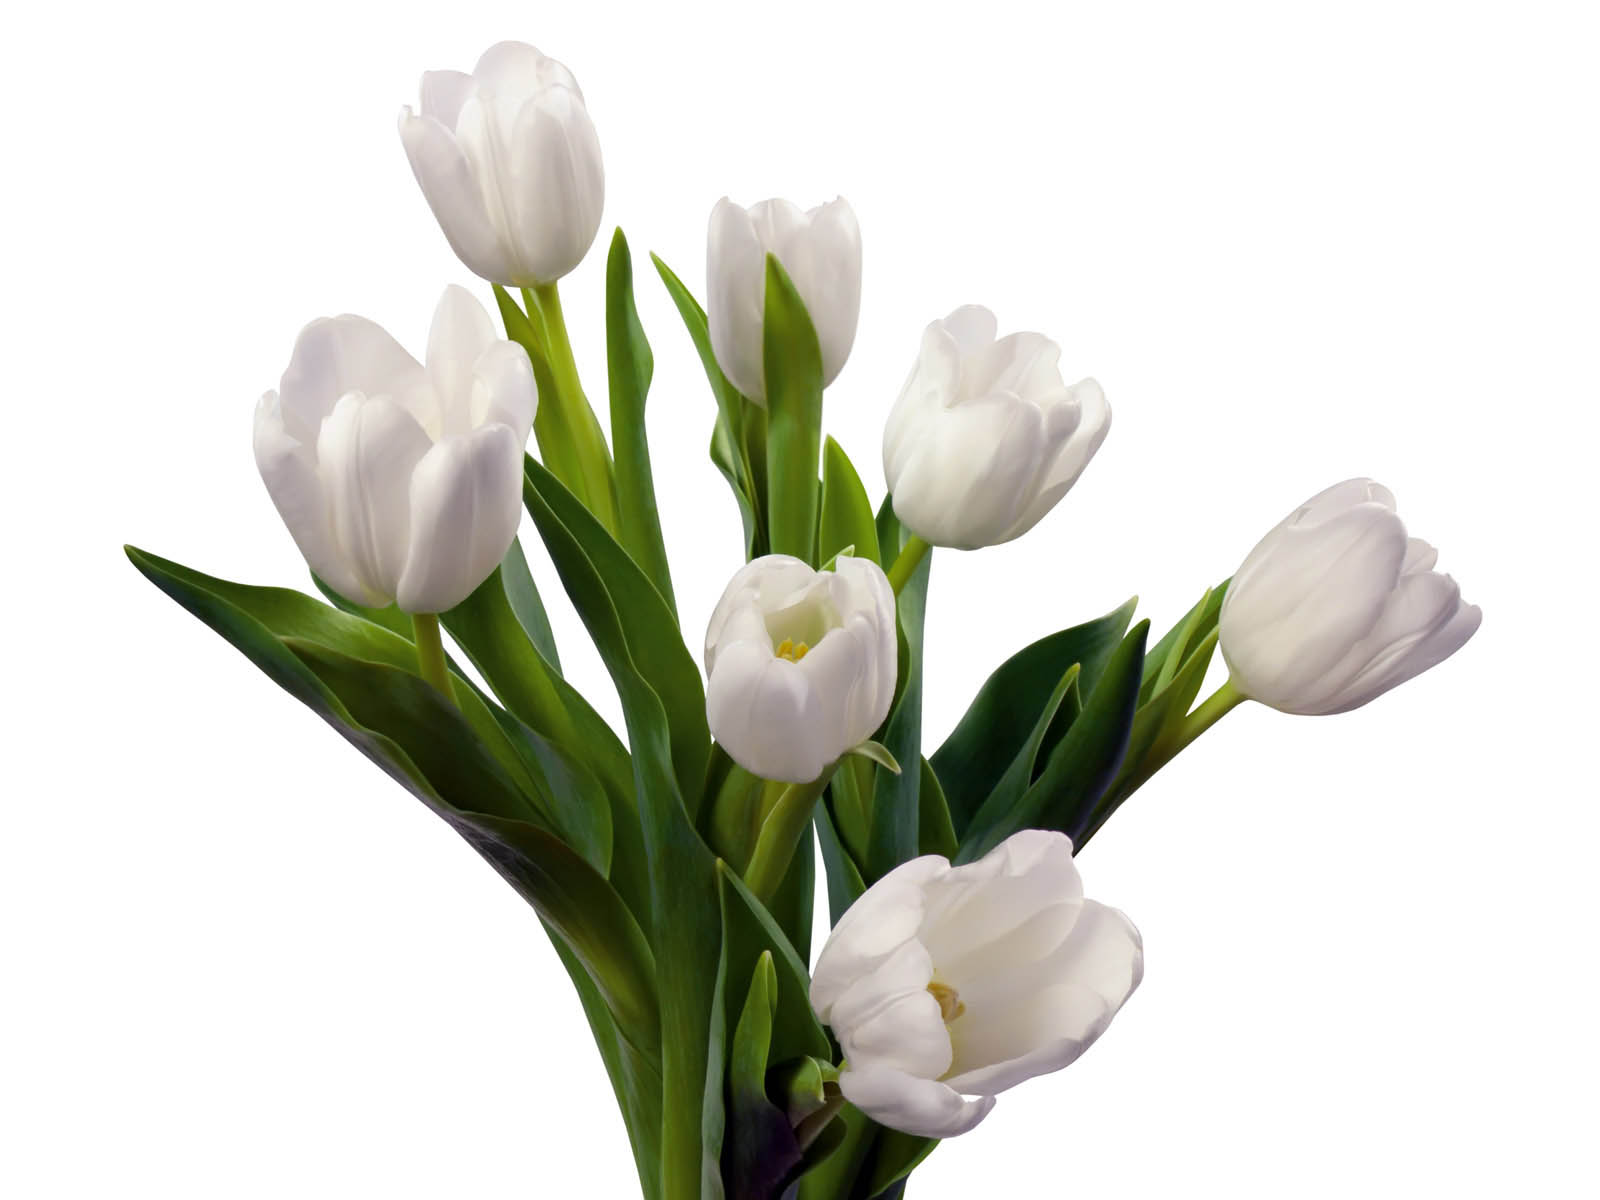 atoz tapete,blume,blühende pflanze,weiß,schnittblumen,blütenblatt